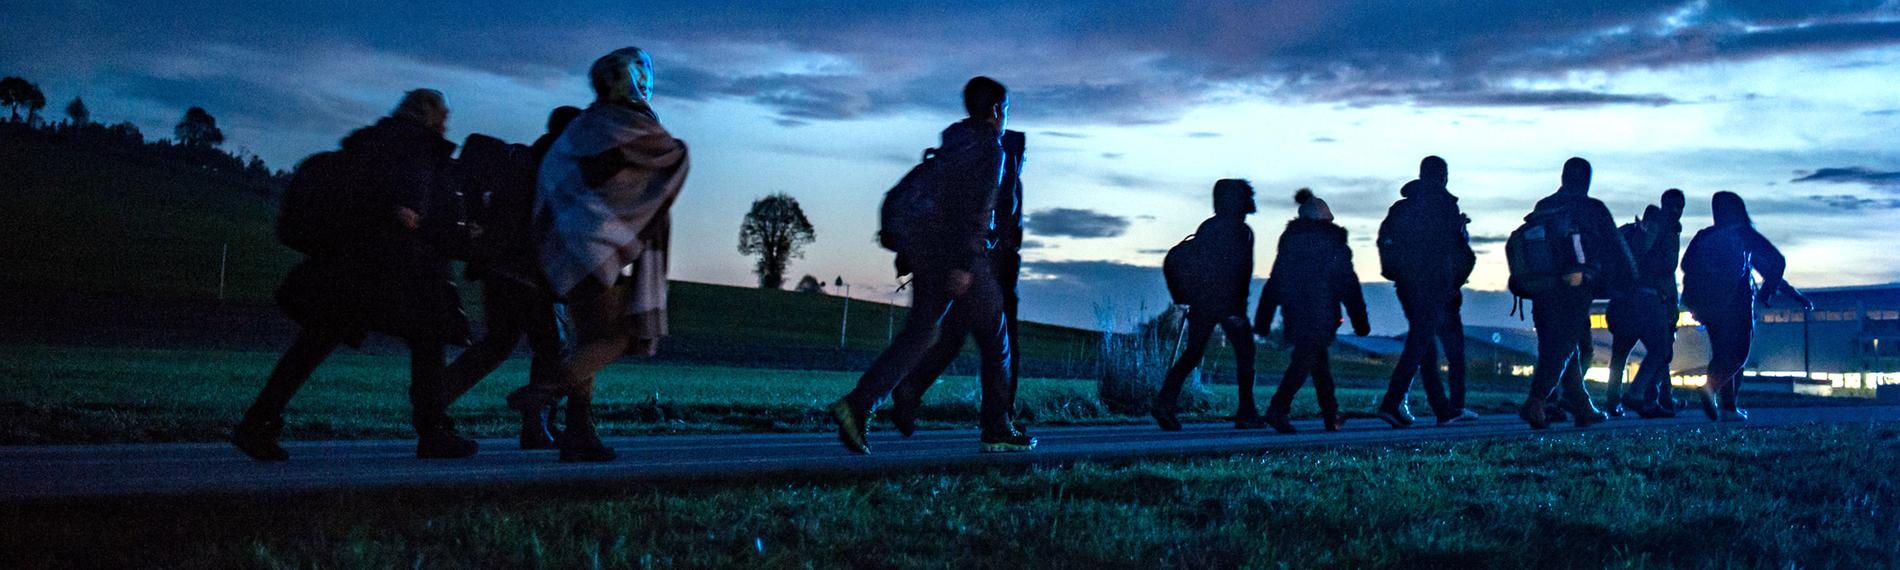 Archiv: Flüchtlinge gehen am 28.10.2015 hinter der deutsch-österreichischen Grenze in Wegscheid (Bayern) zu einer Notunterkunft